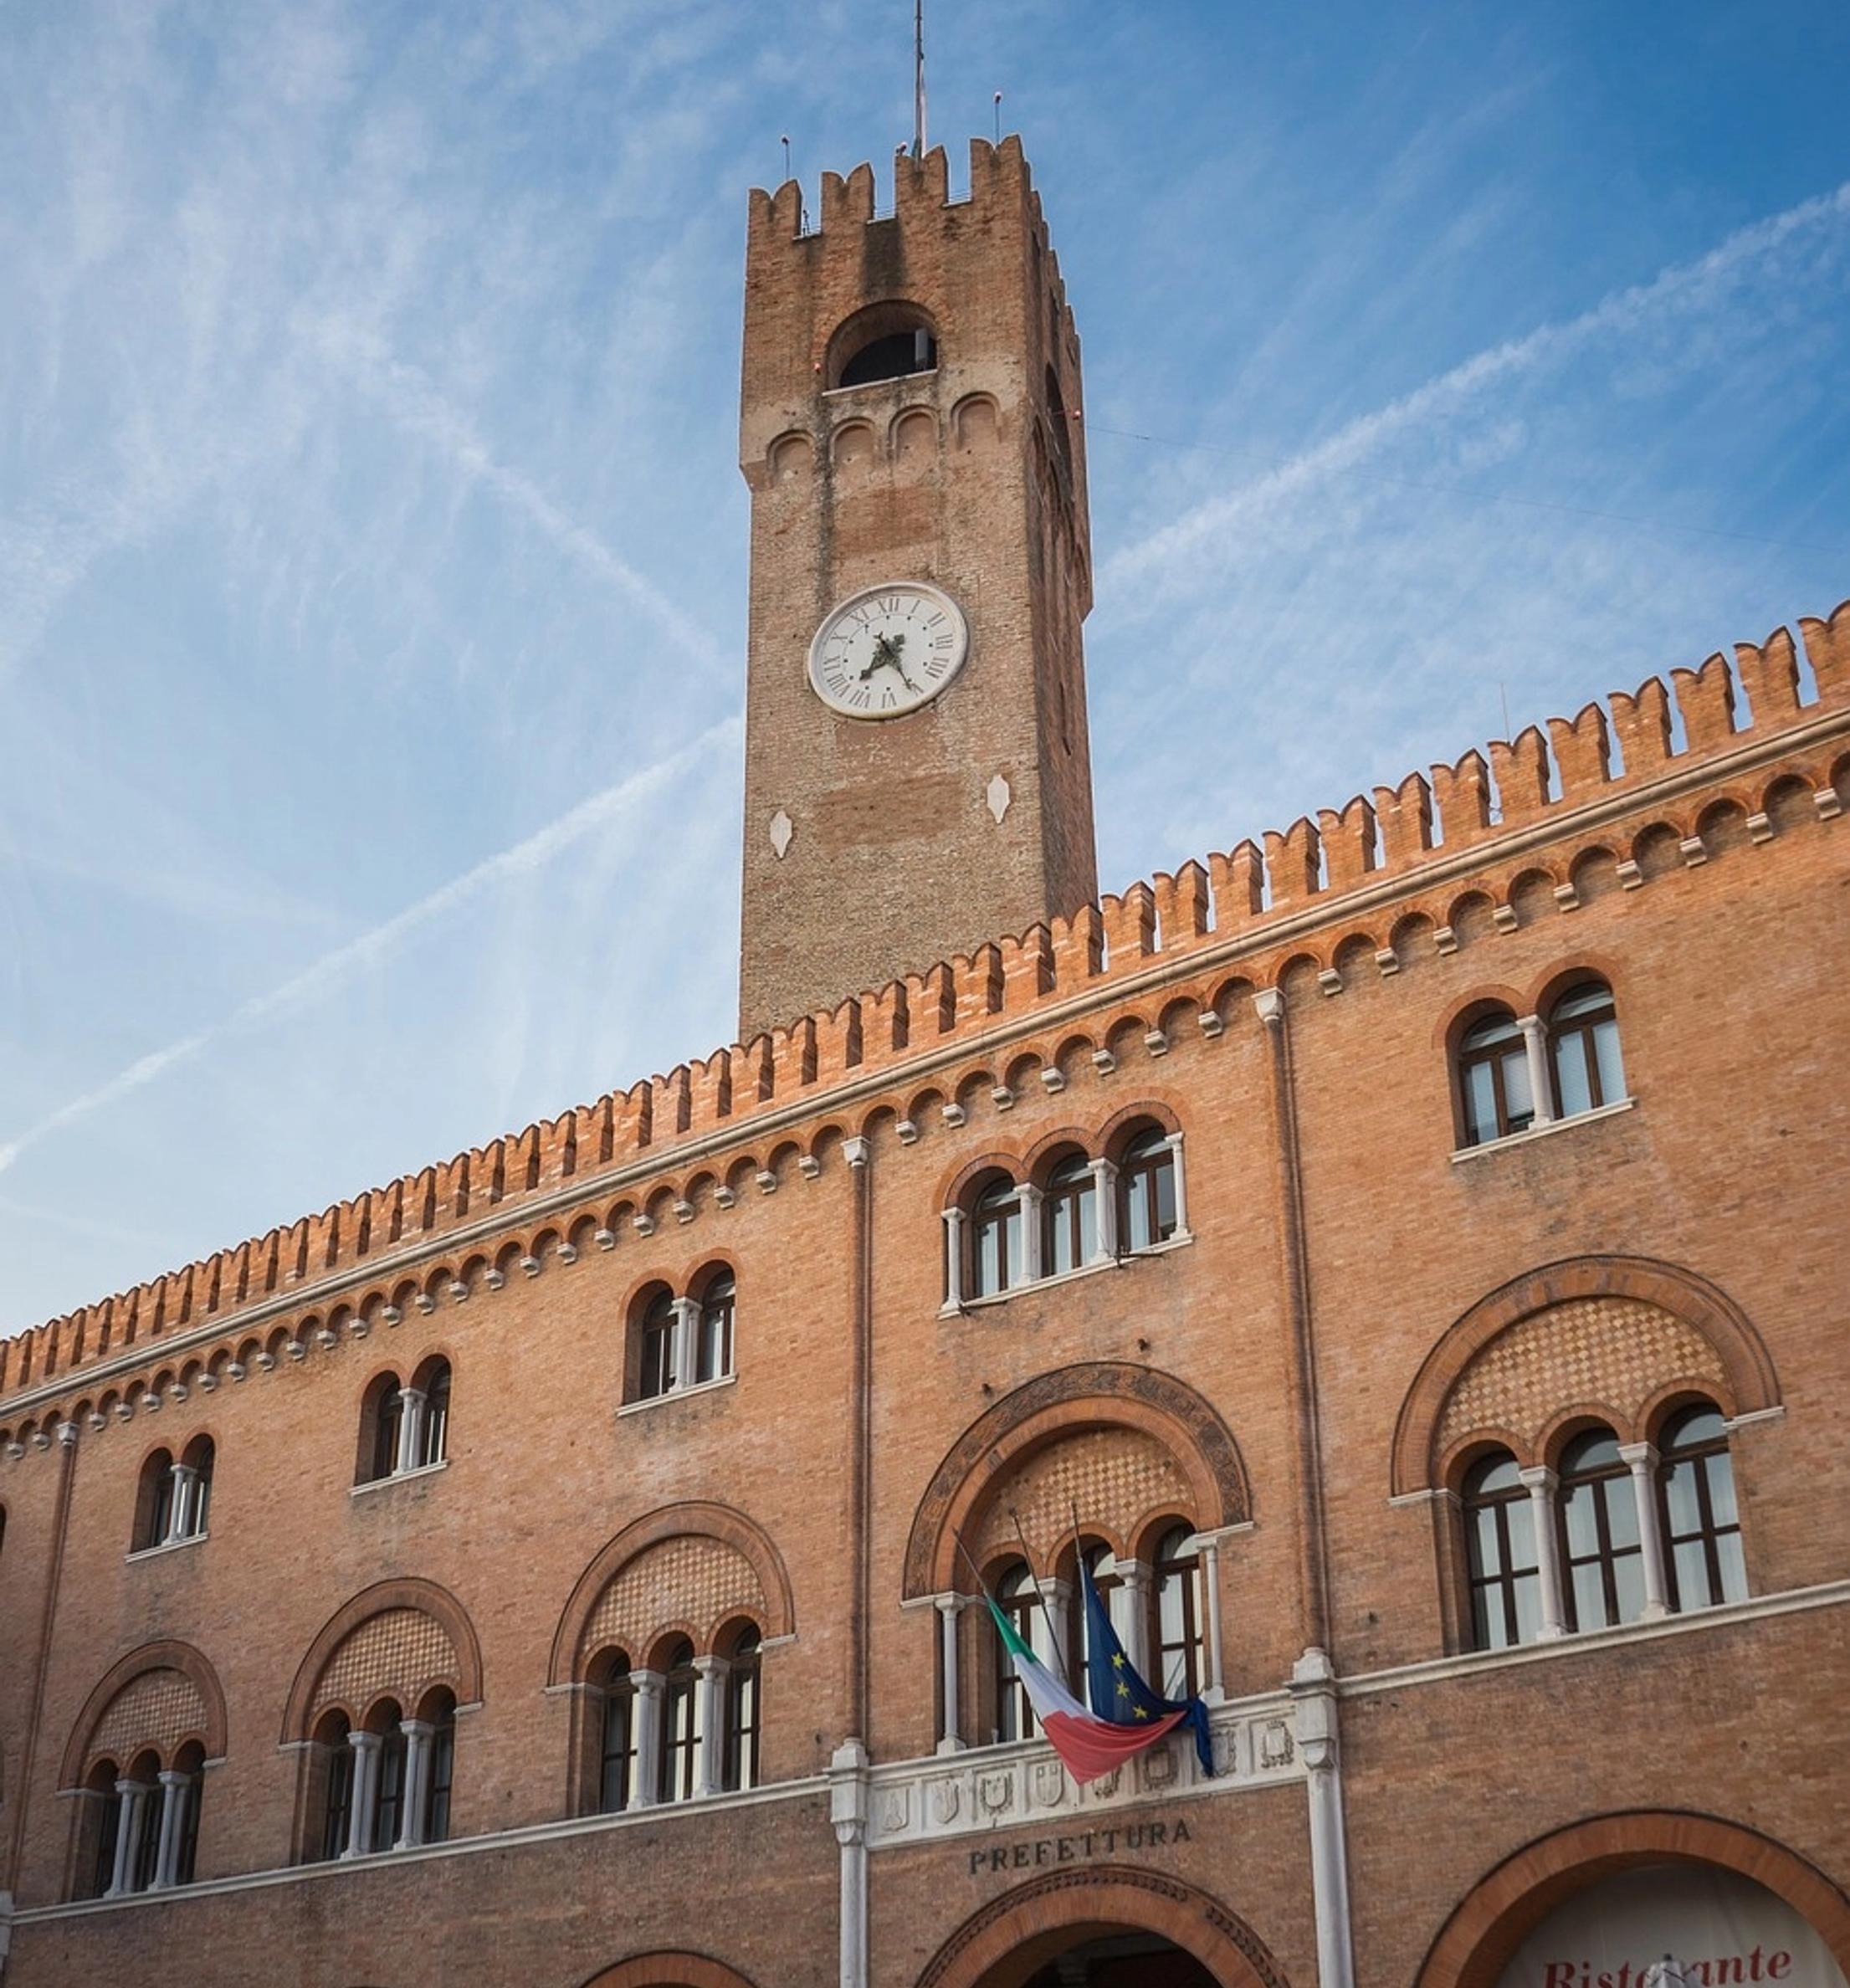 Prefettura e torre con orologio di Treviso